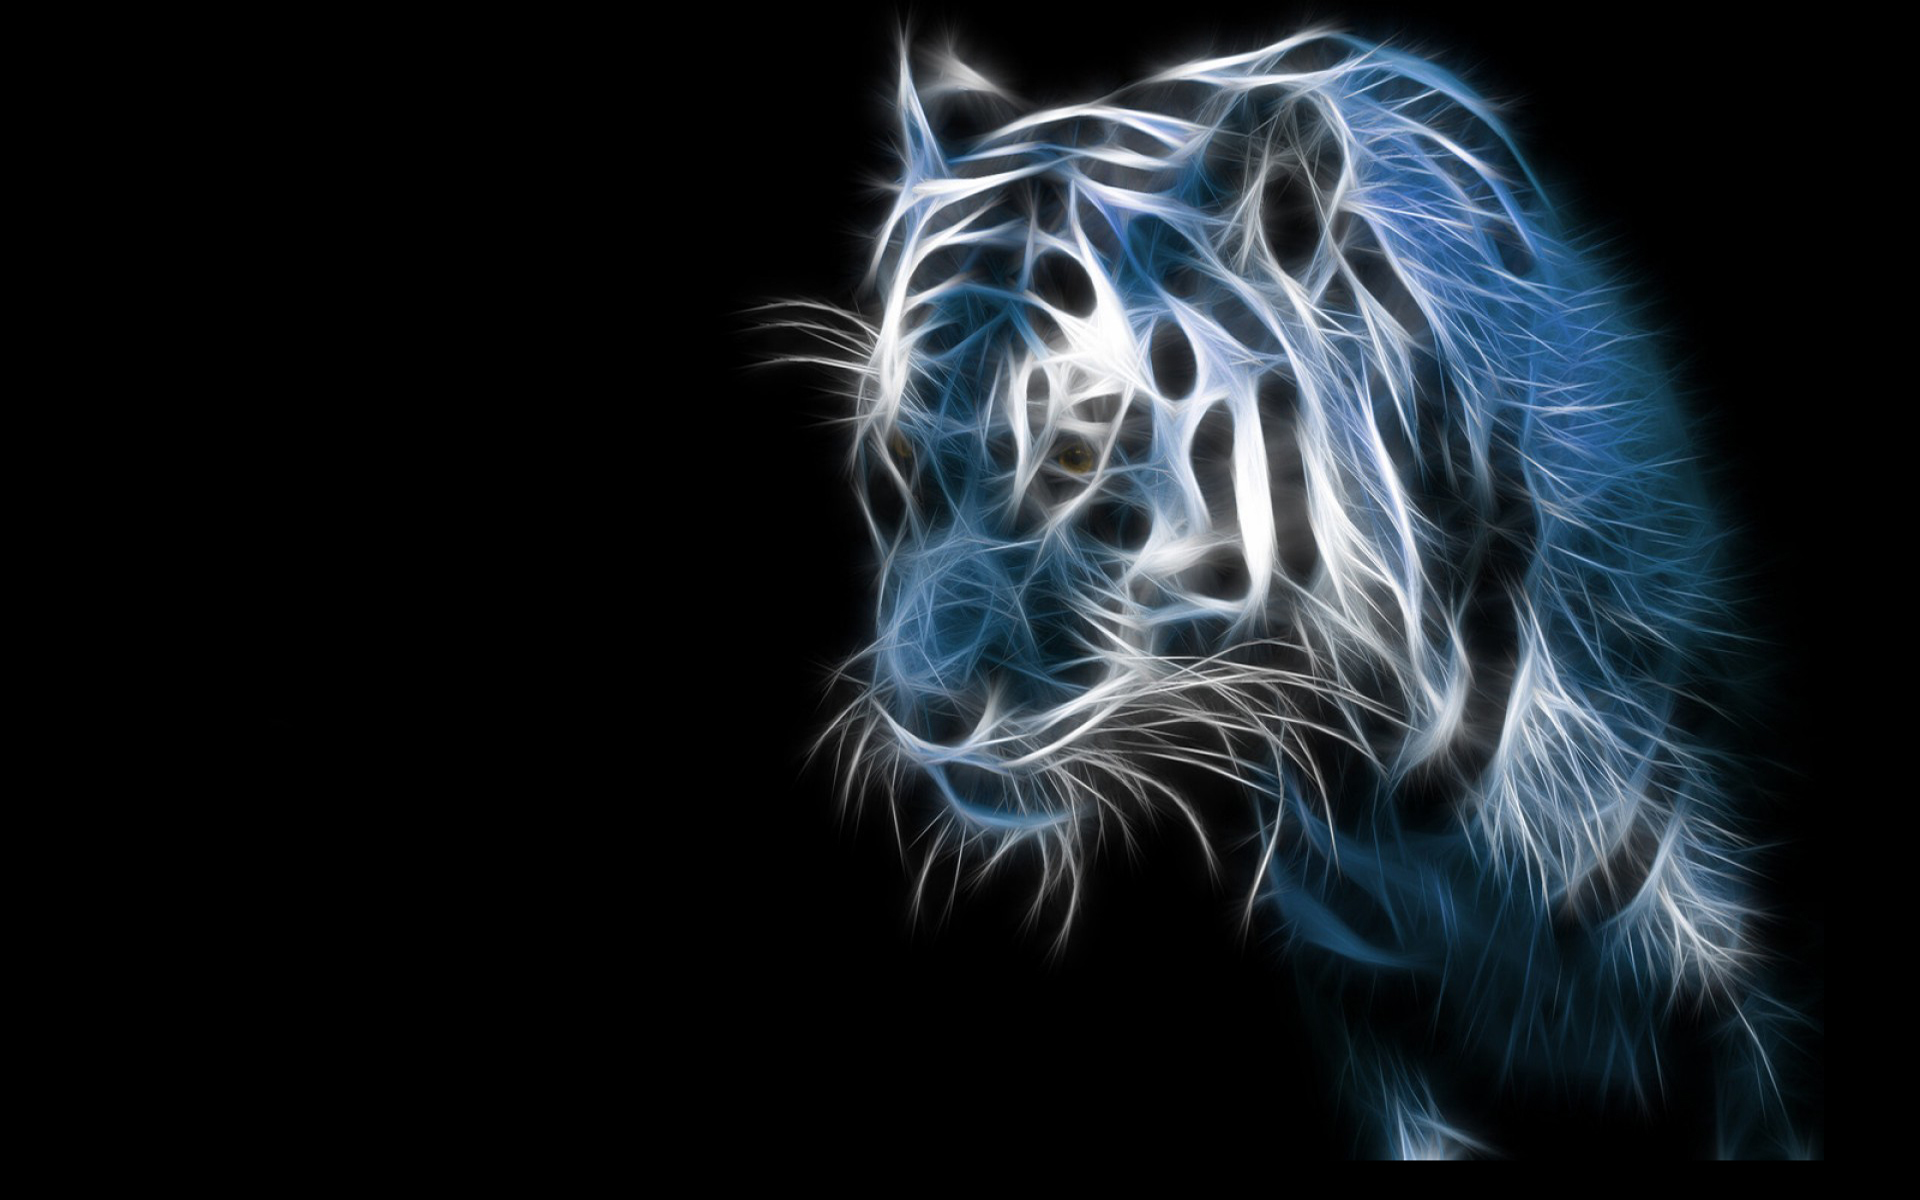 art, tigers, animals, black Image for desktop